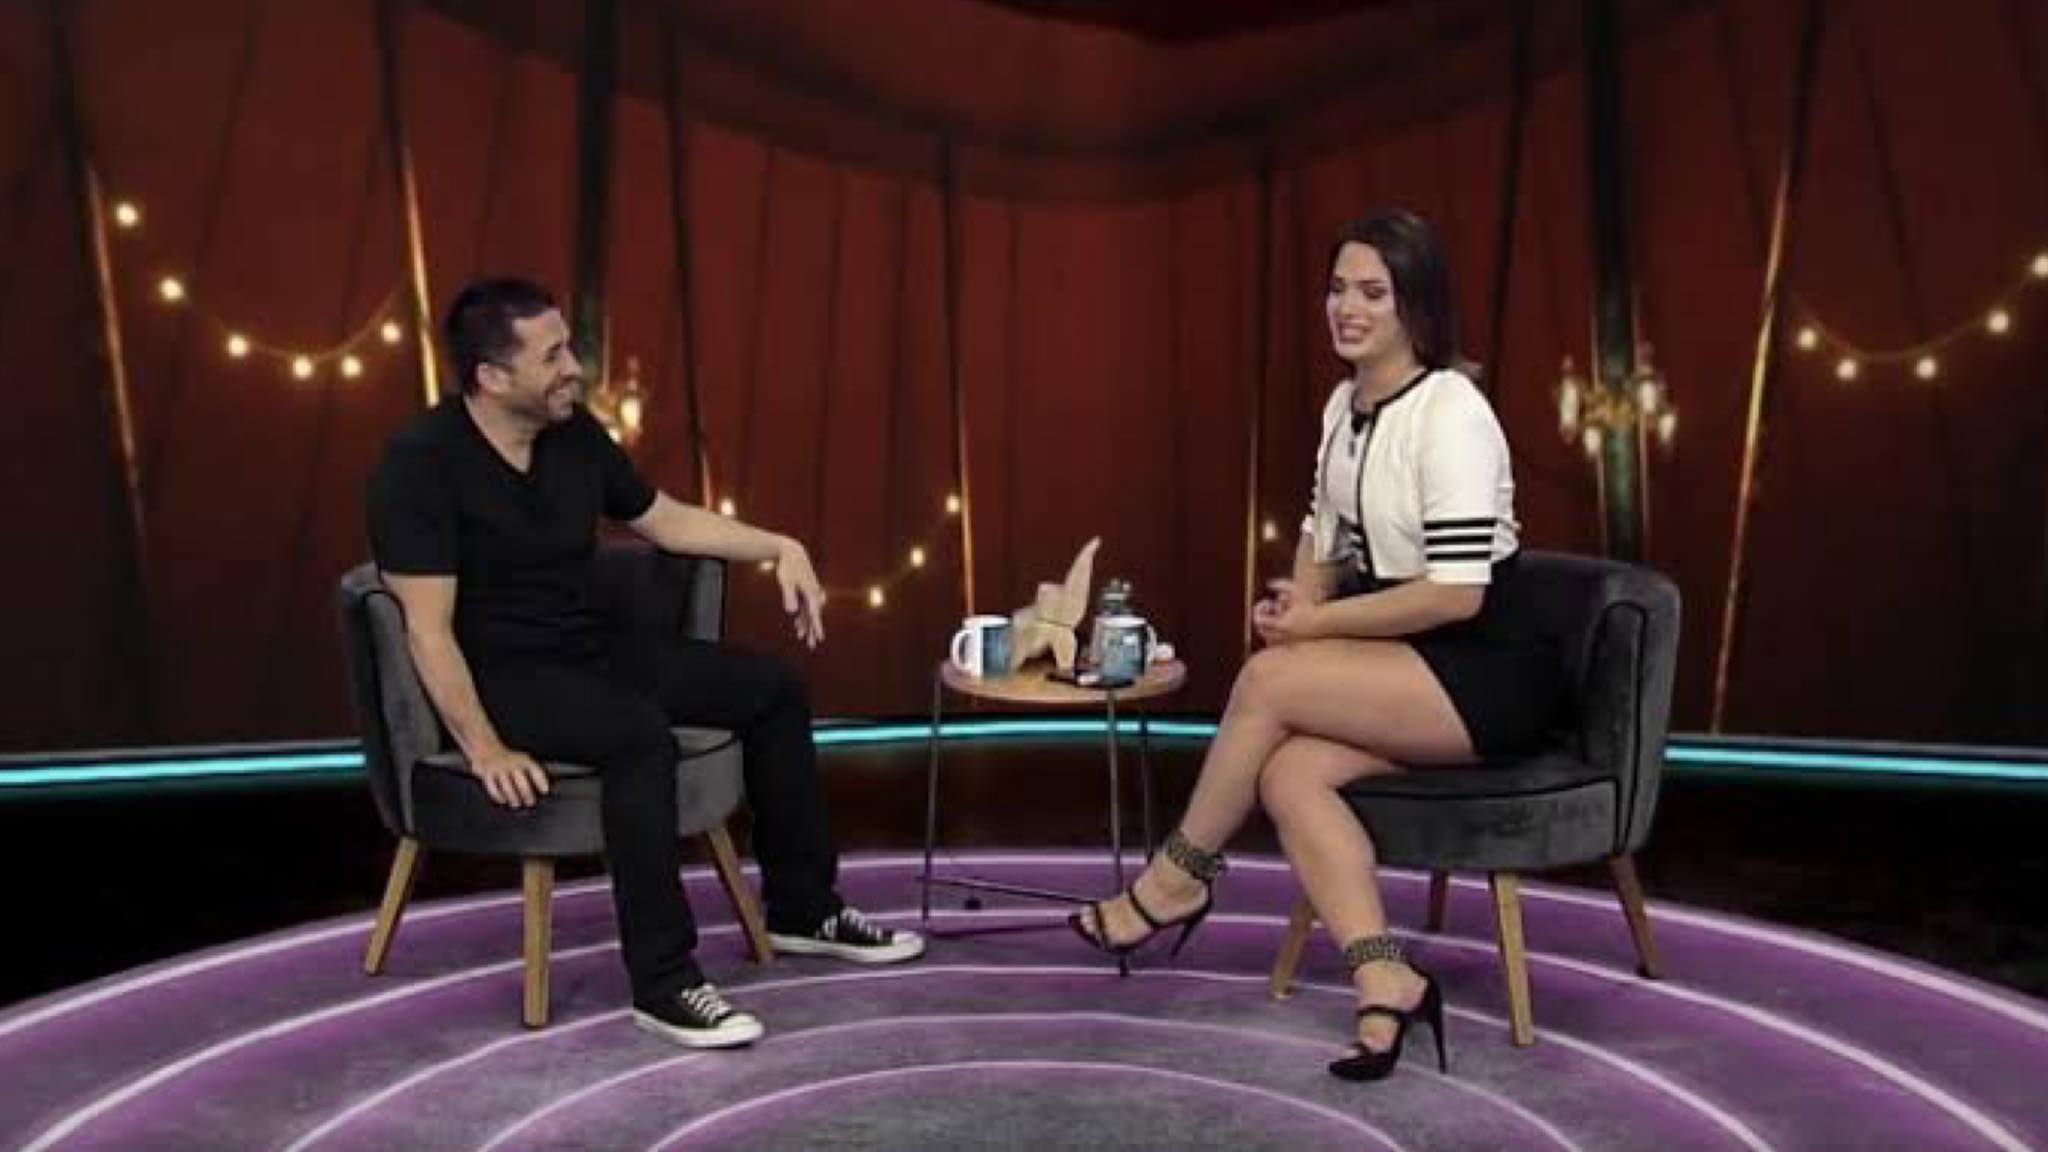 Maurício Meirelles pergunta sobre partes íntimas de Juliana Paes à Glamour Garcia no "Foi Mau" da RedeTV!. Fonte: Reprodução